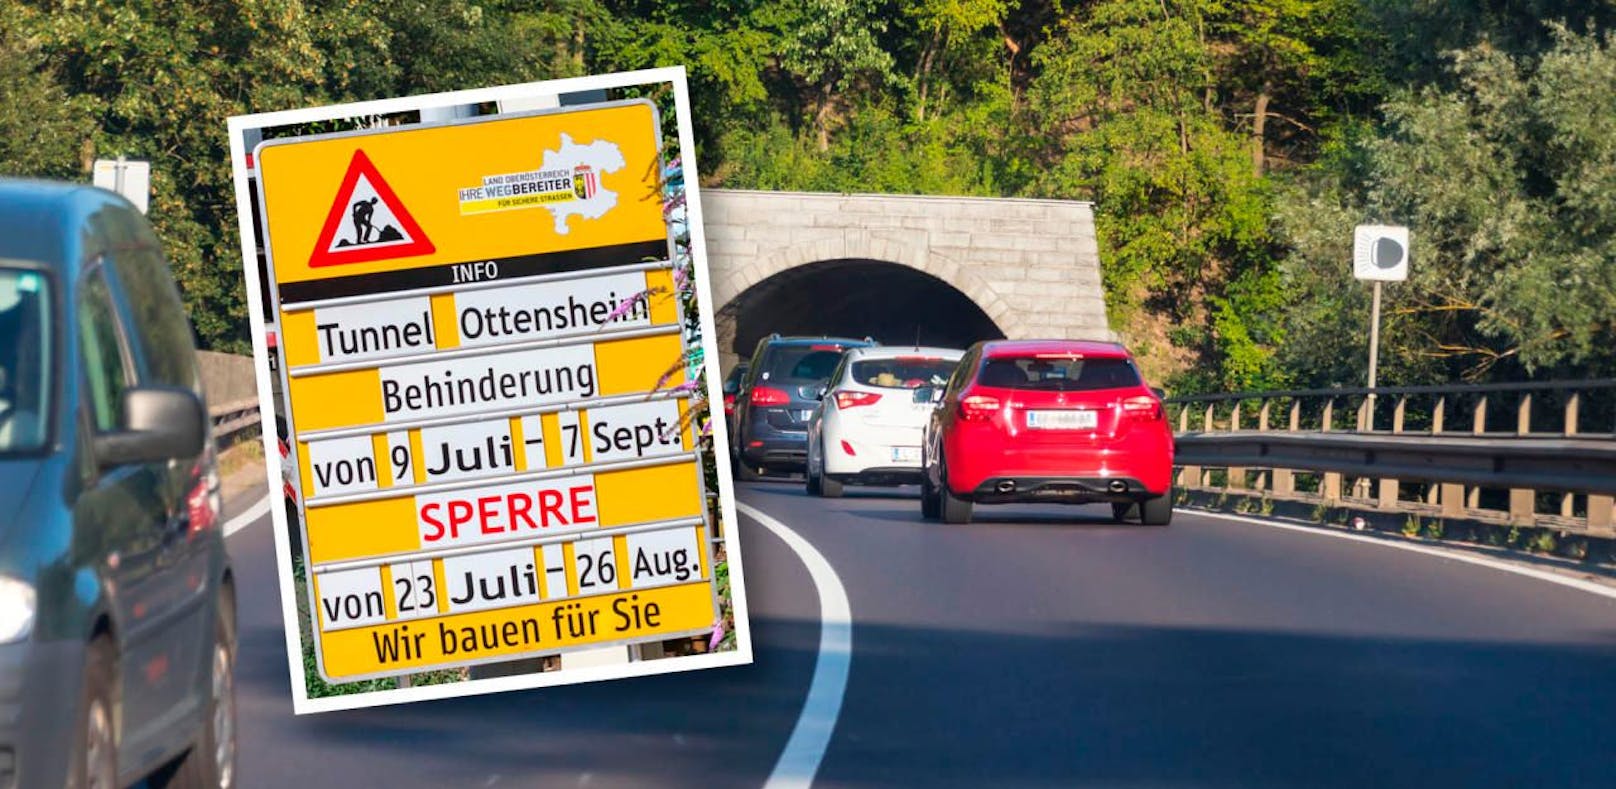 Ab Montag ist der Tunnel in Ottensheim fünf Wochen lang für Autos gesperrt.